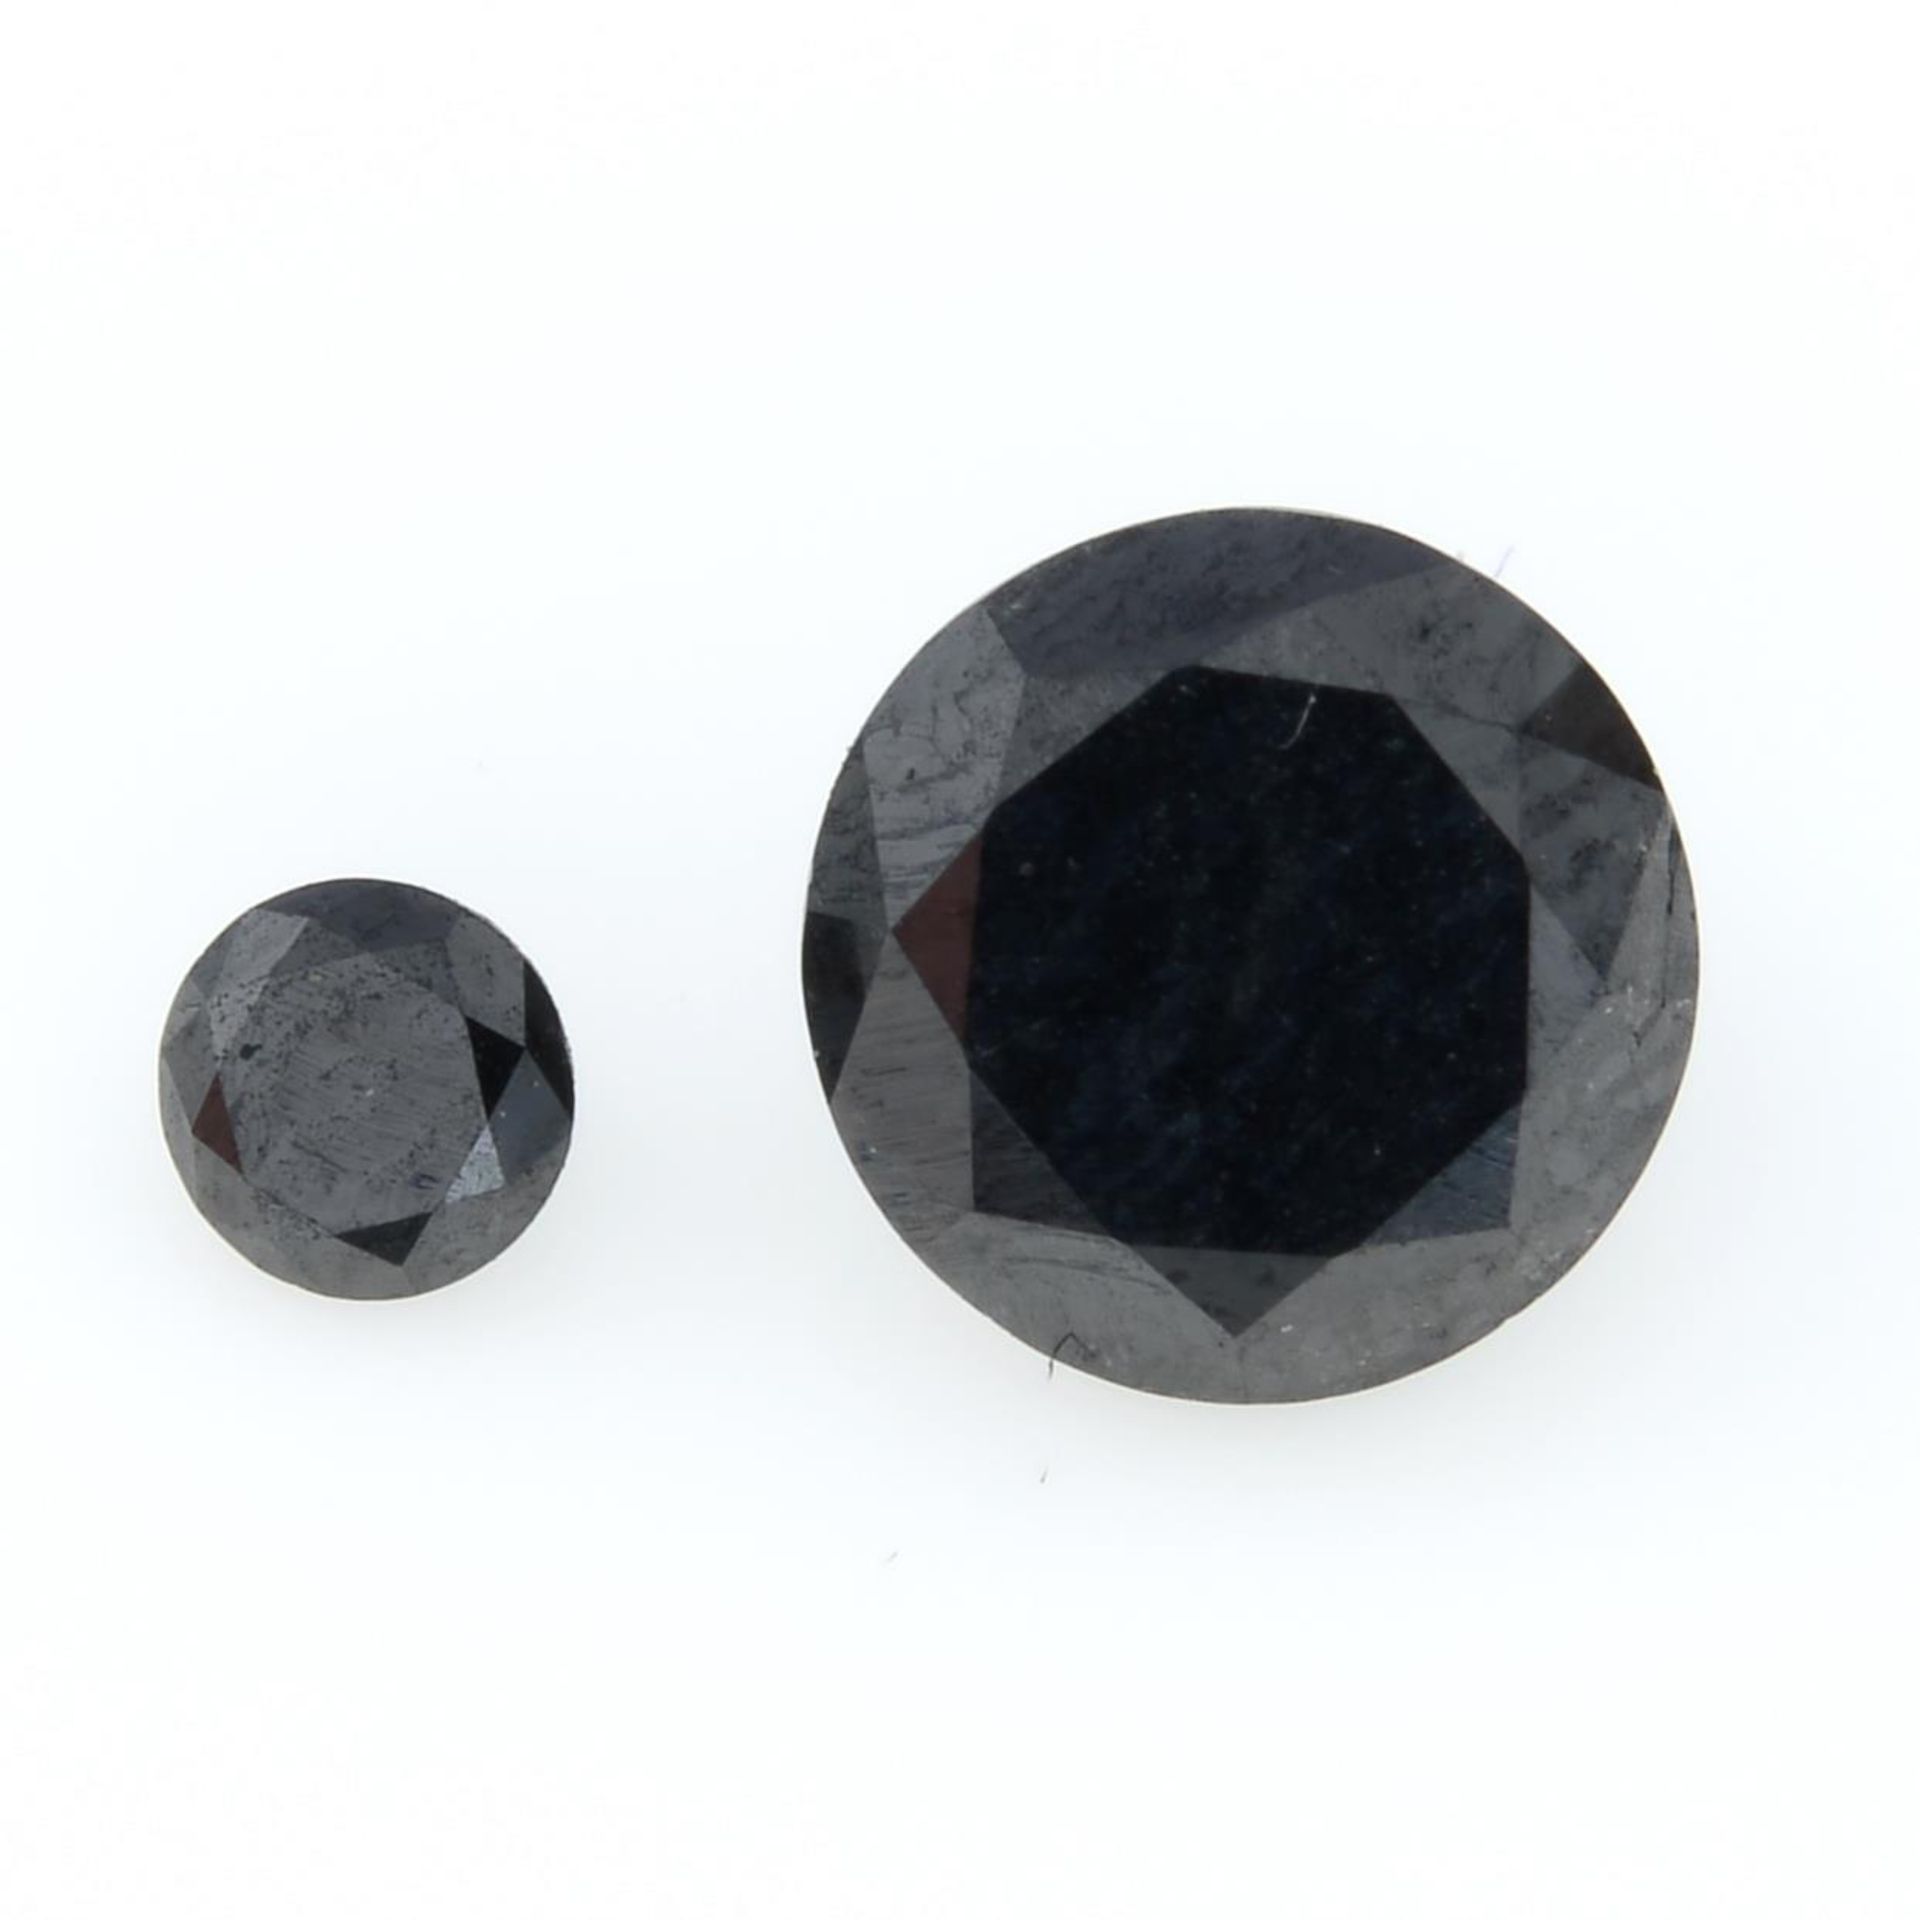 Two black gemstones, weighing 1.23ct.